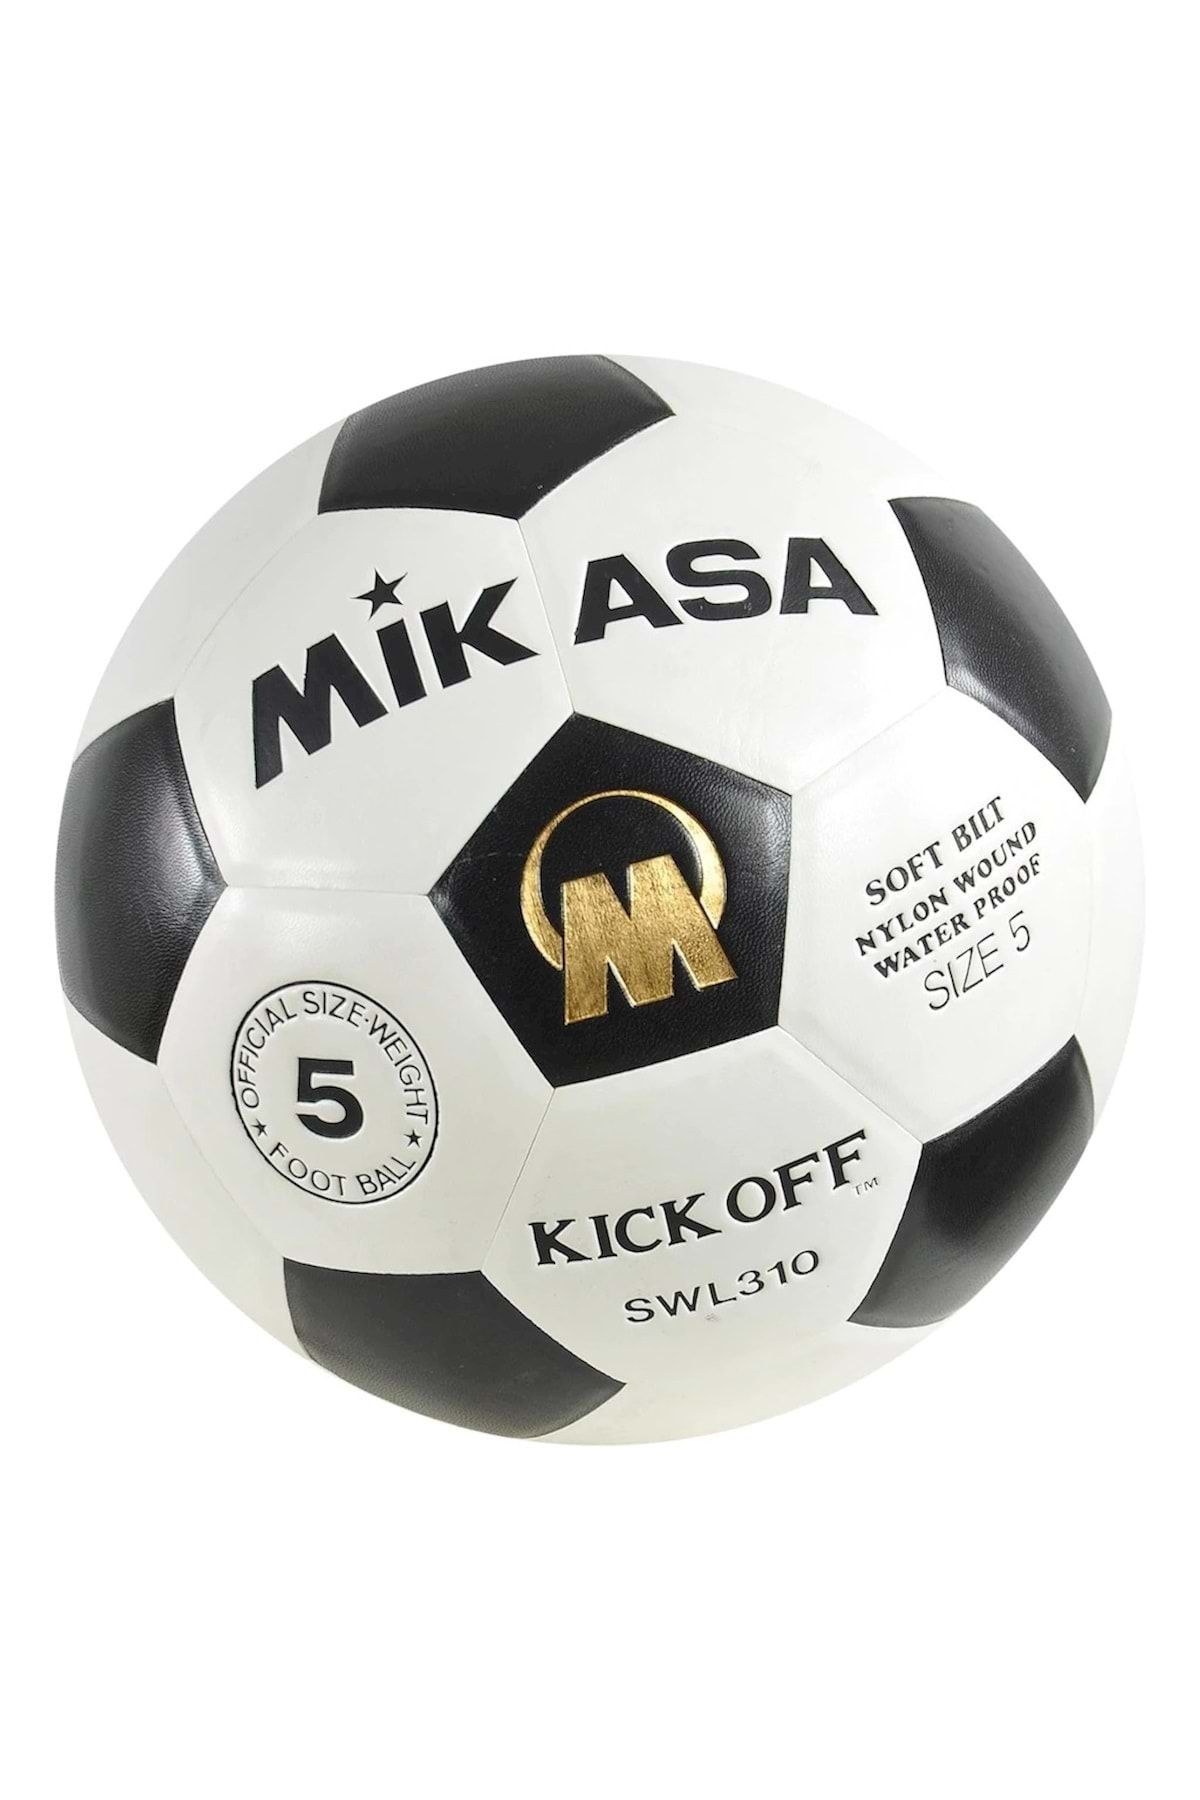 MIKASA Swl310 Sentetik Deri Futbol Topu Topftbnnn015